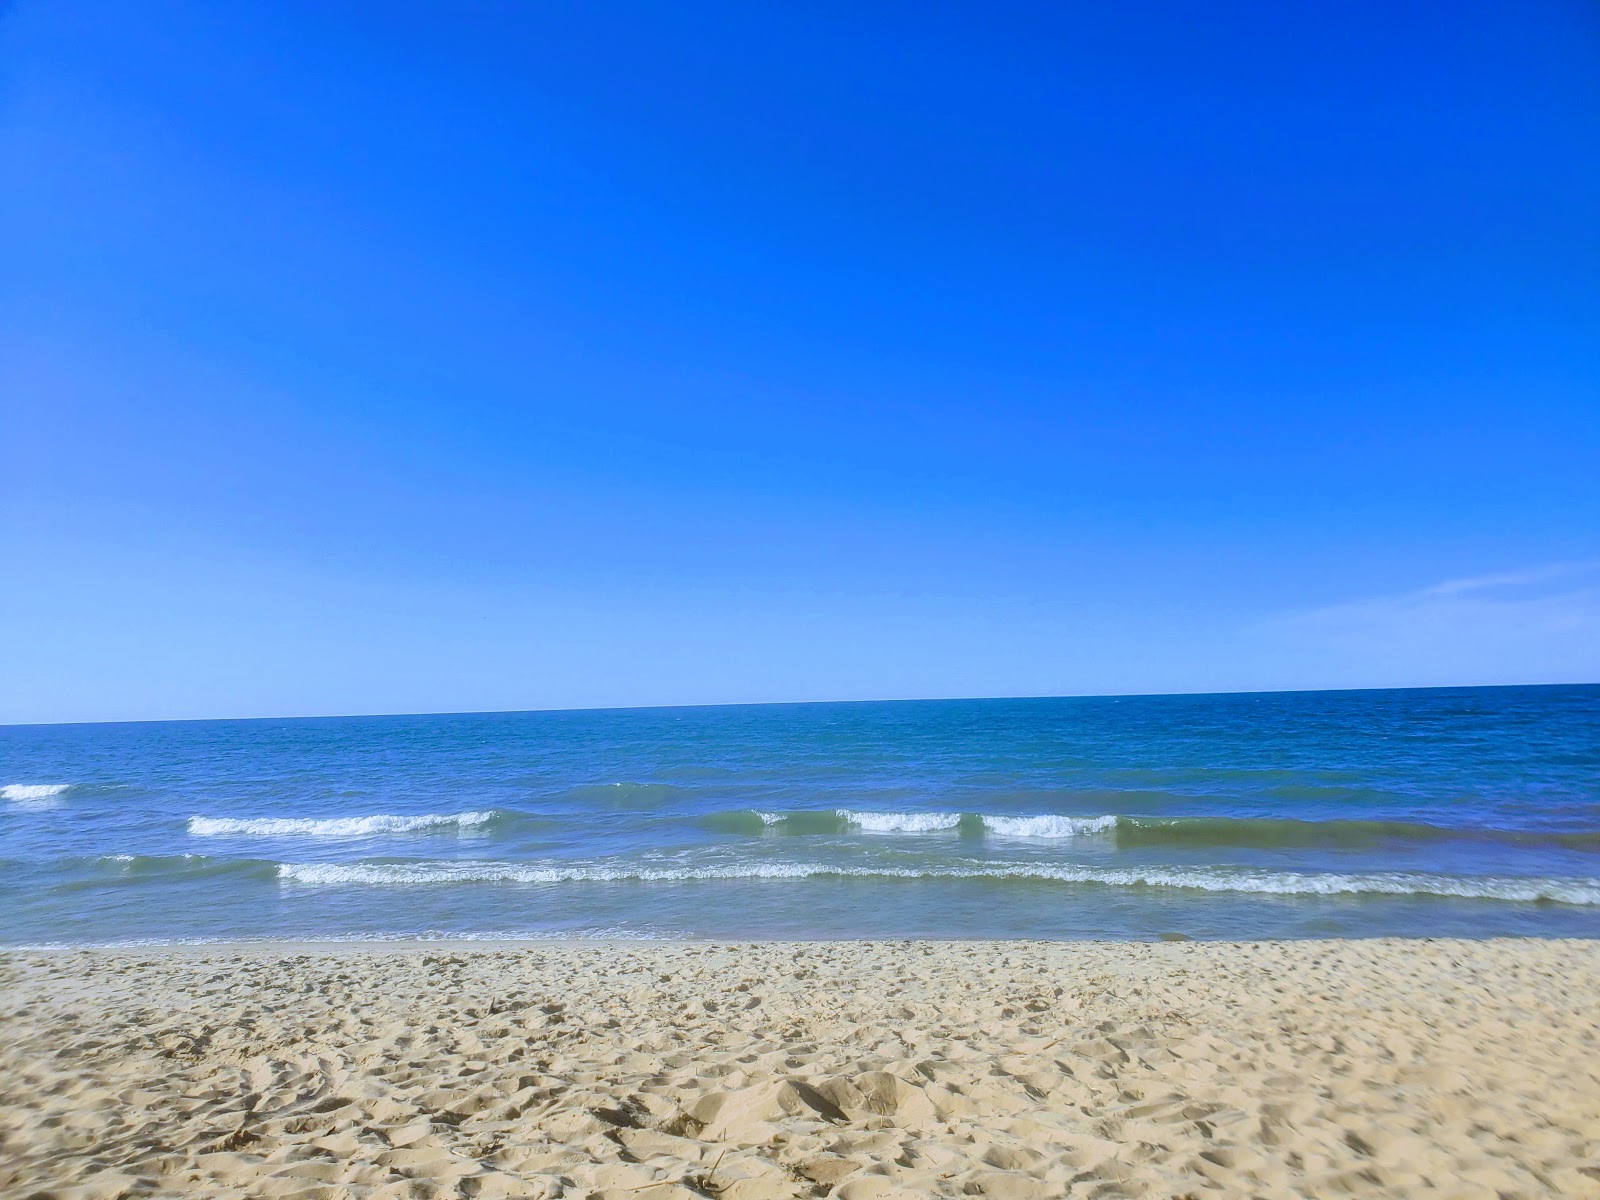 Philp County Park Beach'in fotoğrafı - rahatlamayı sevenler arasında popüler bir yer